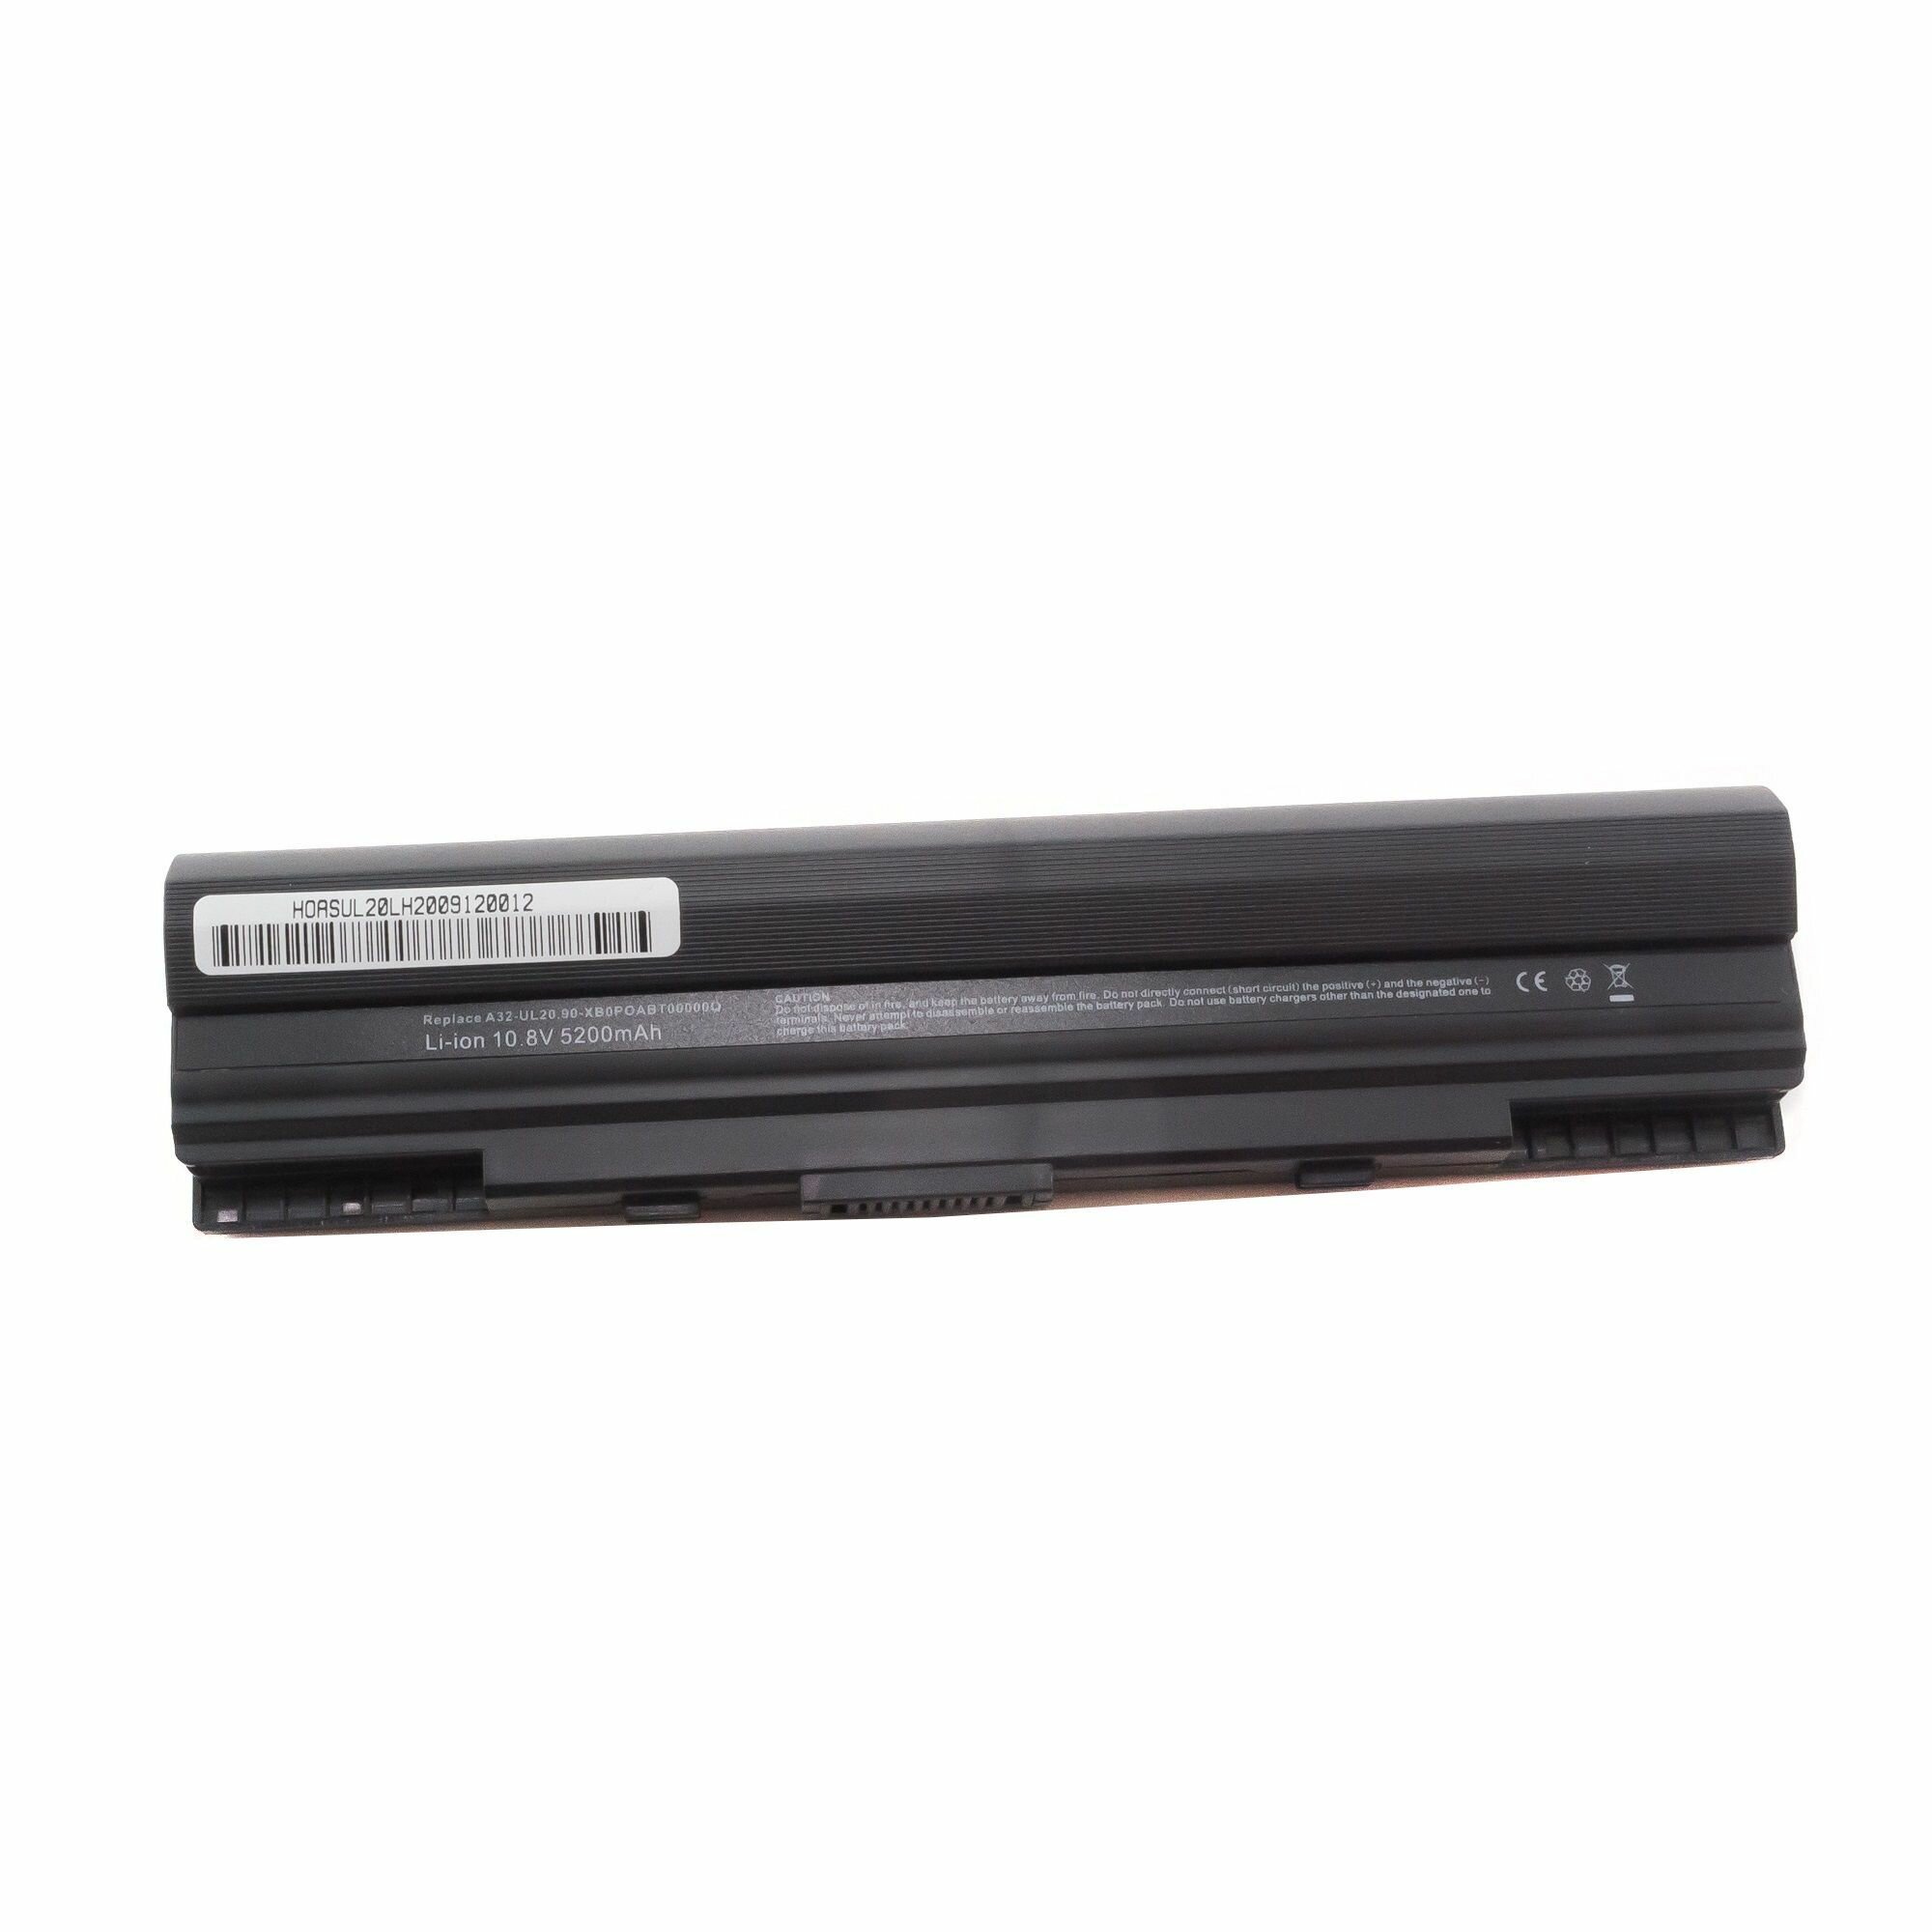 Аккумулятор для ноутбука Asus A31-UL20, A32-UL20, 11.1V, 5200mAh, код mb012153